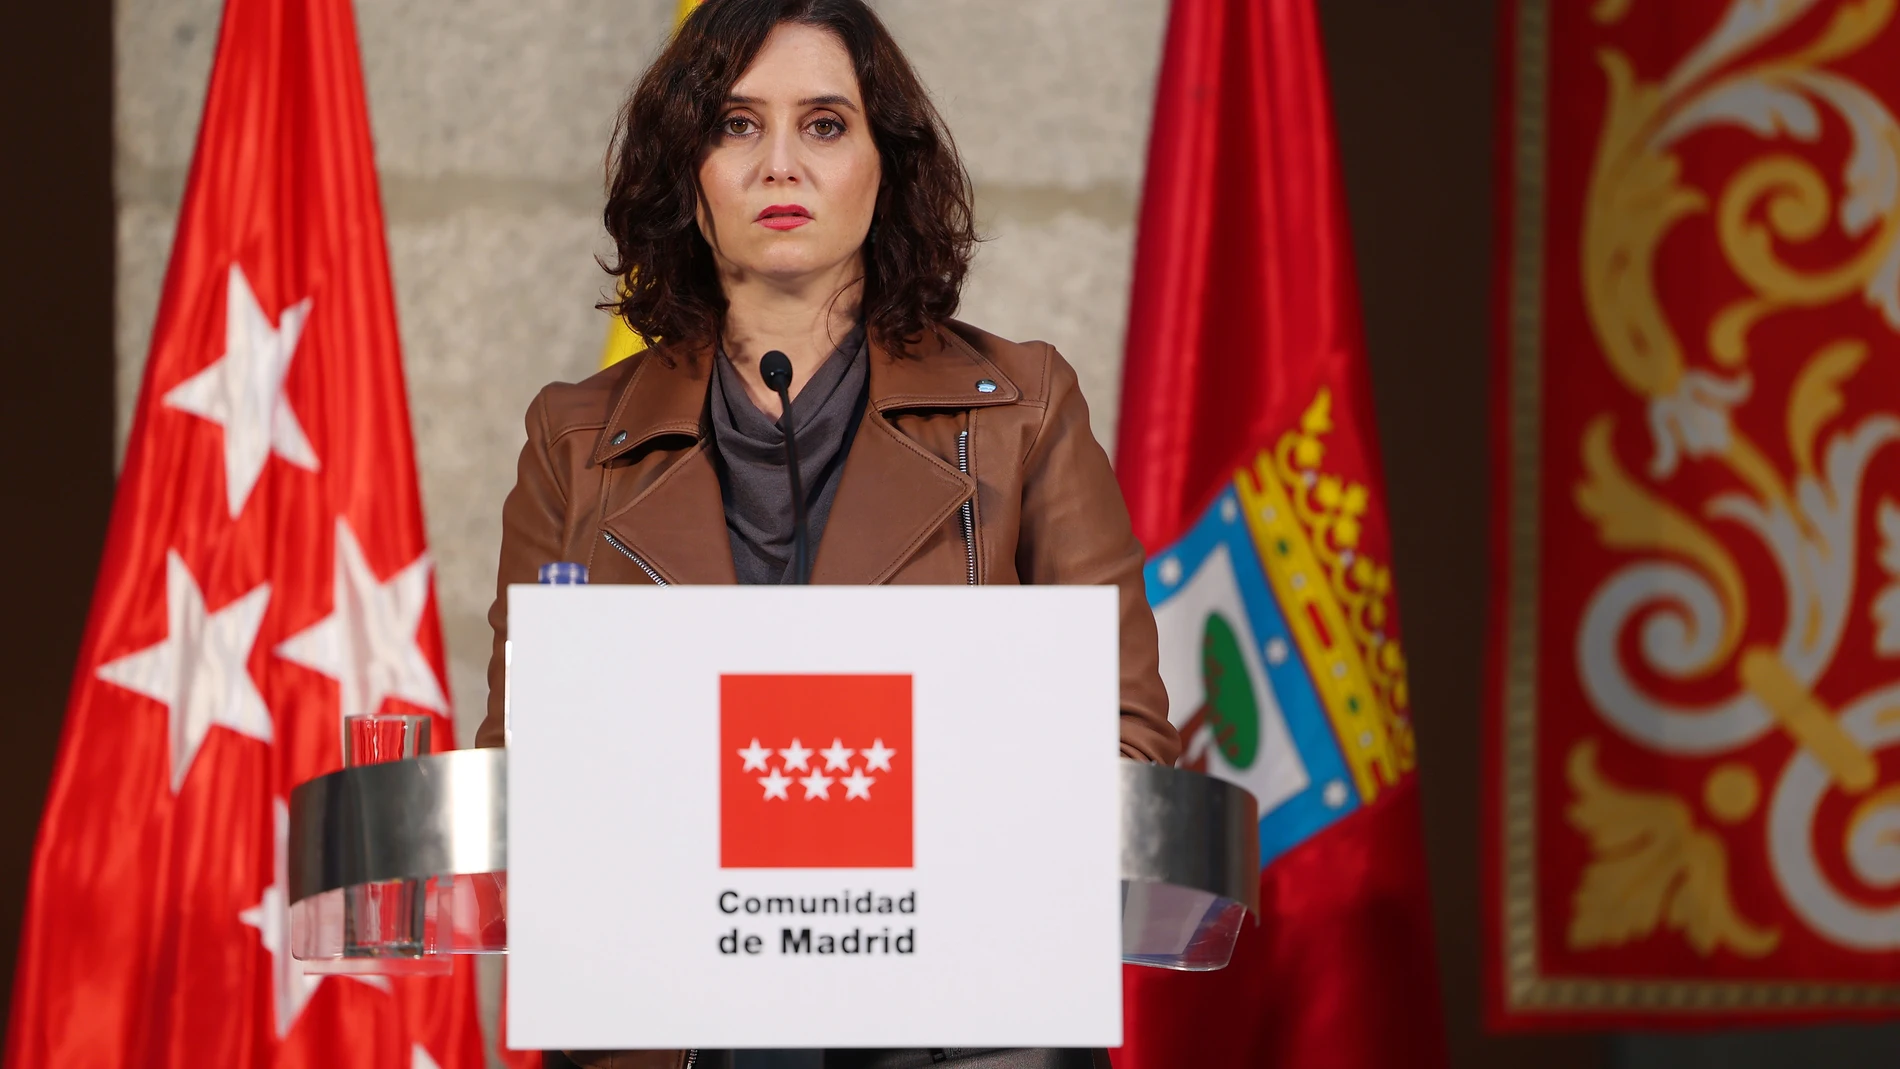 La presidenta de la Comunidad de Madrid, Isabel Díaz Ayuso, realiza declaraciones sobre la situación actual y evolución epidemiológica del COVID-19, en la Real Casa de Correos